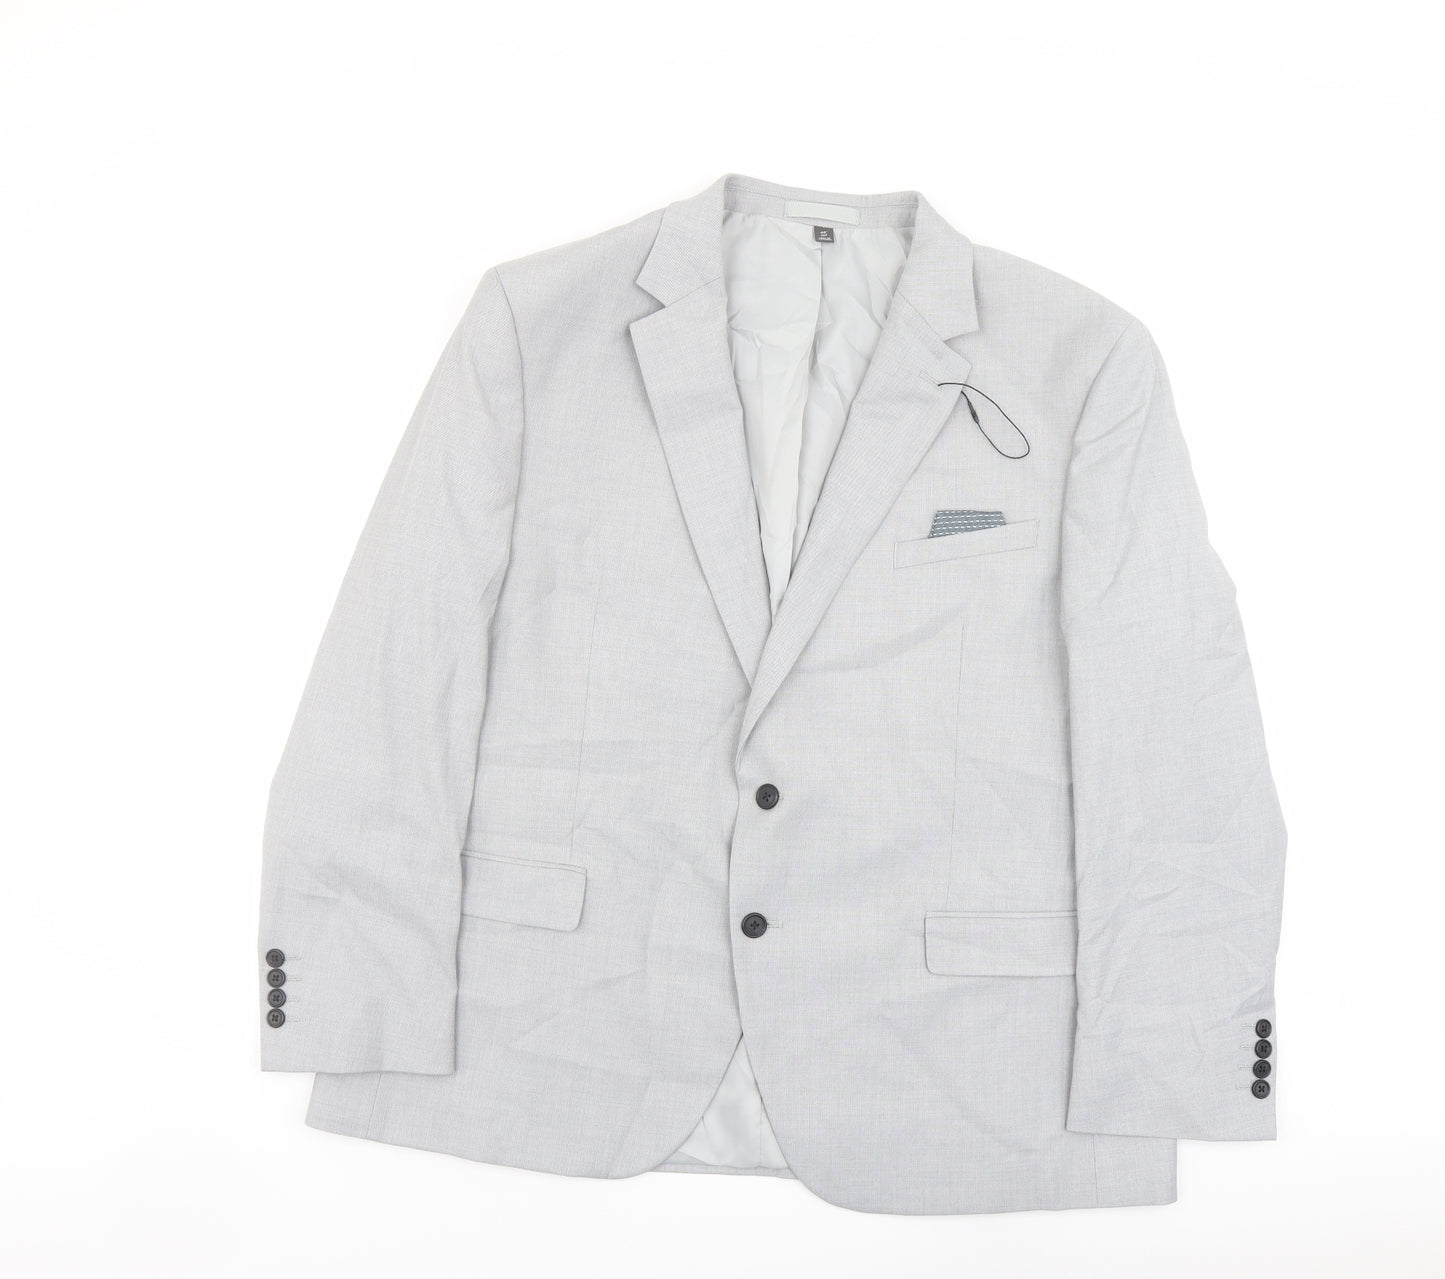 Marks and Spencer Mens Green Polyester Jacket Suit Jacket Size 46 Regular